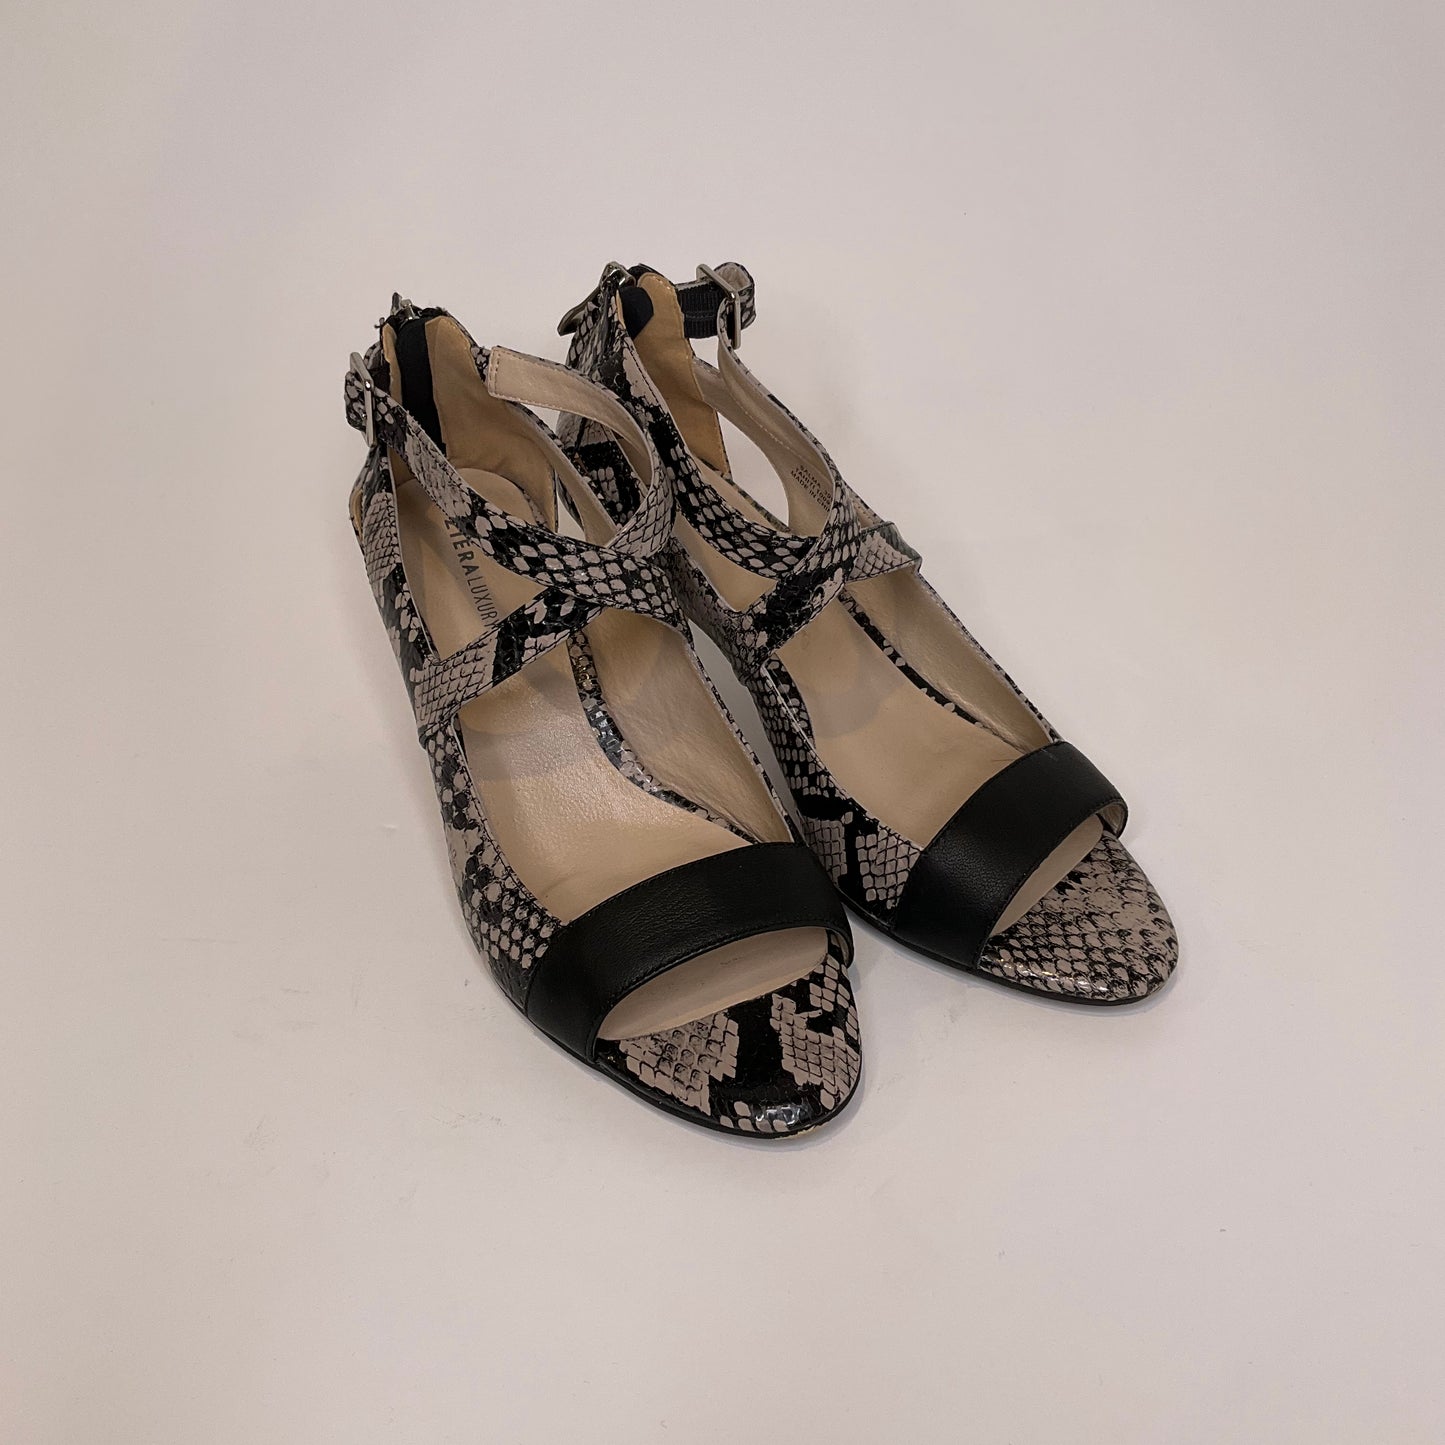 Ziera - Shoes - Size 39